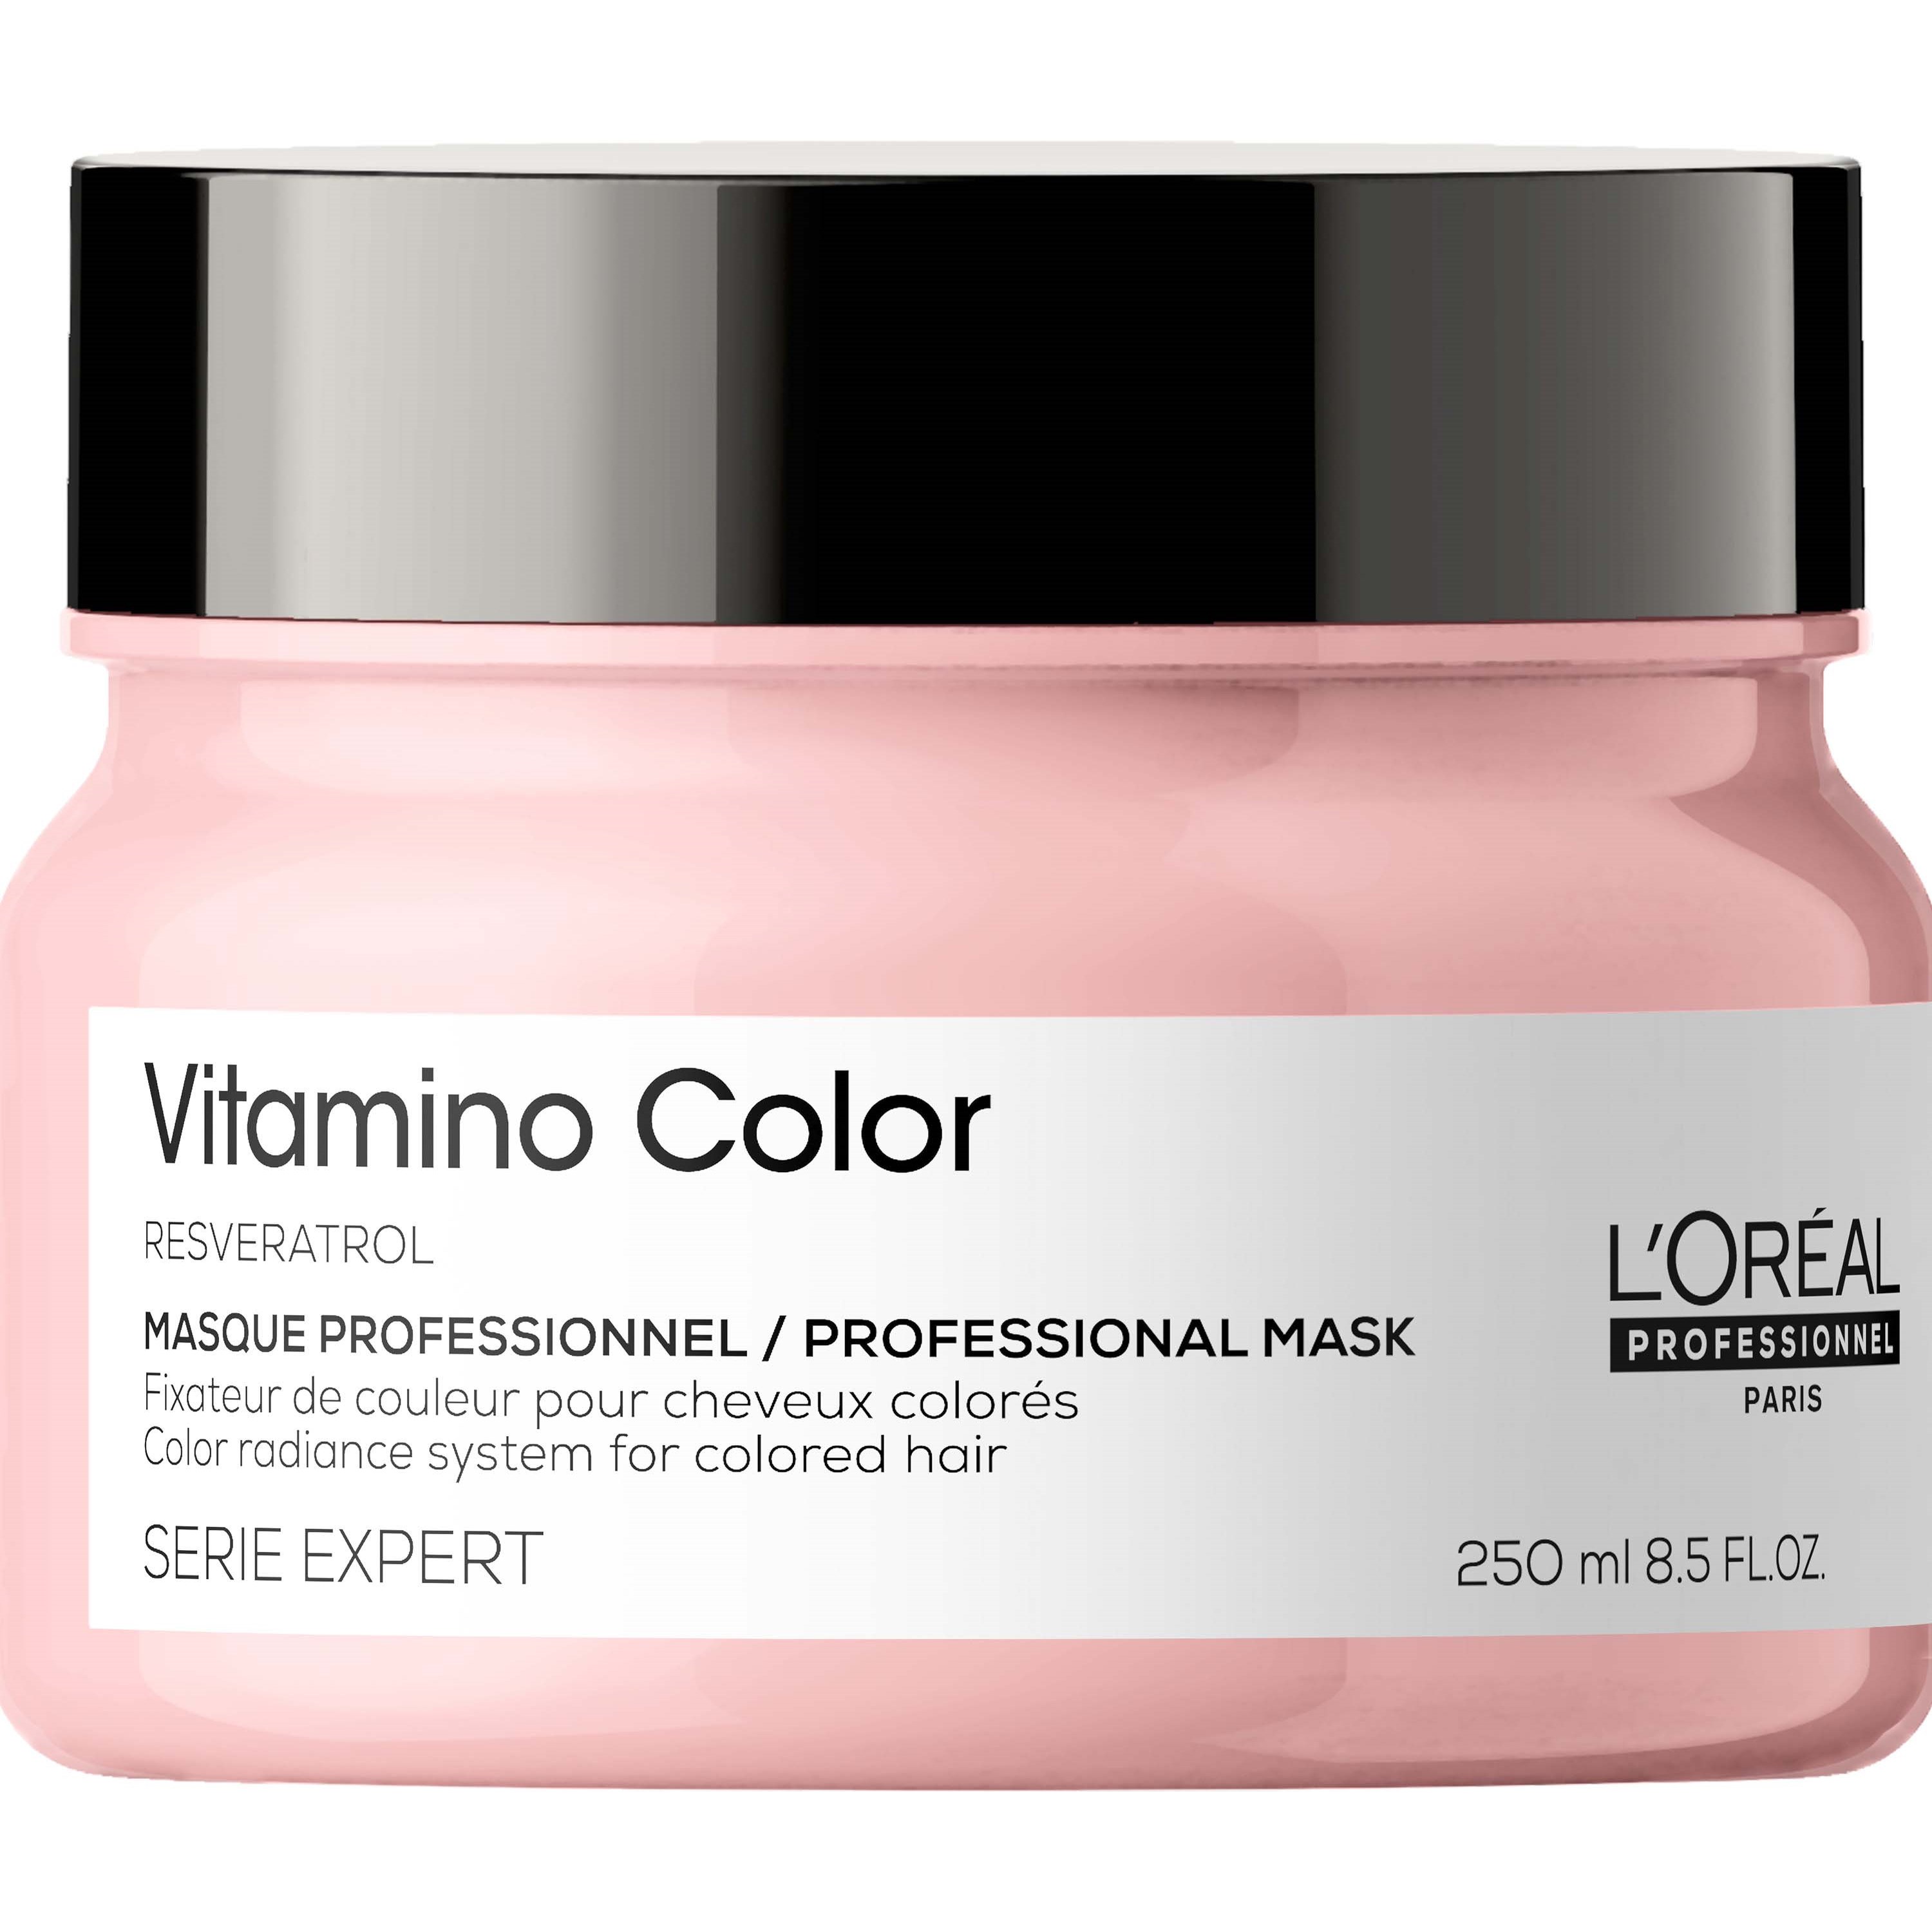 LOréal Professionnel Vitamino Color Masque 250 ml